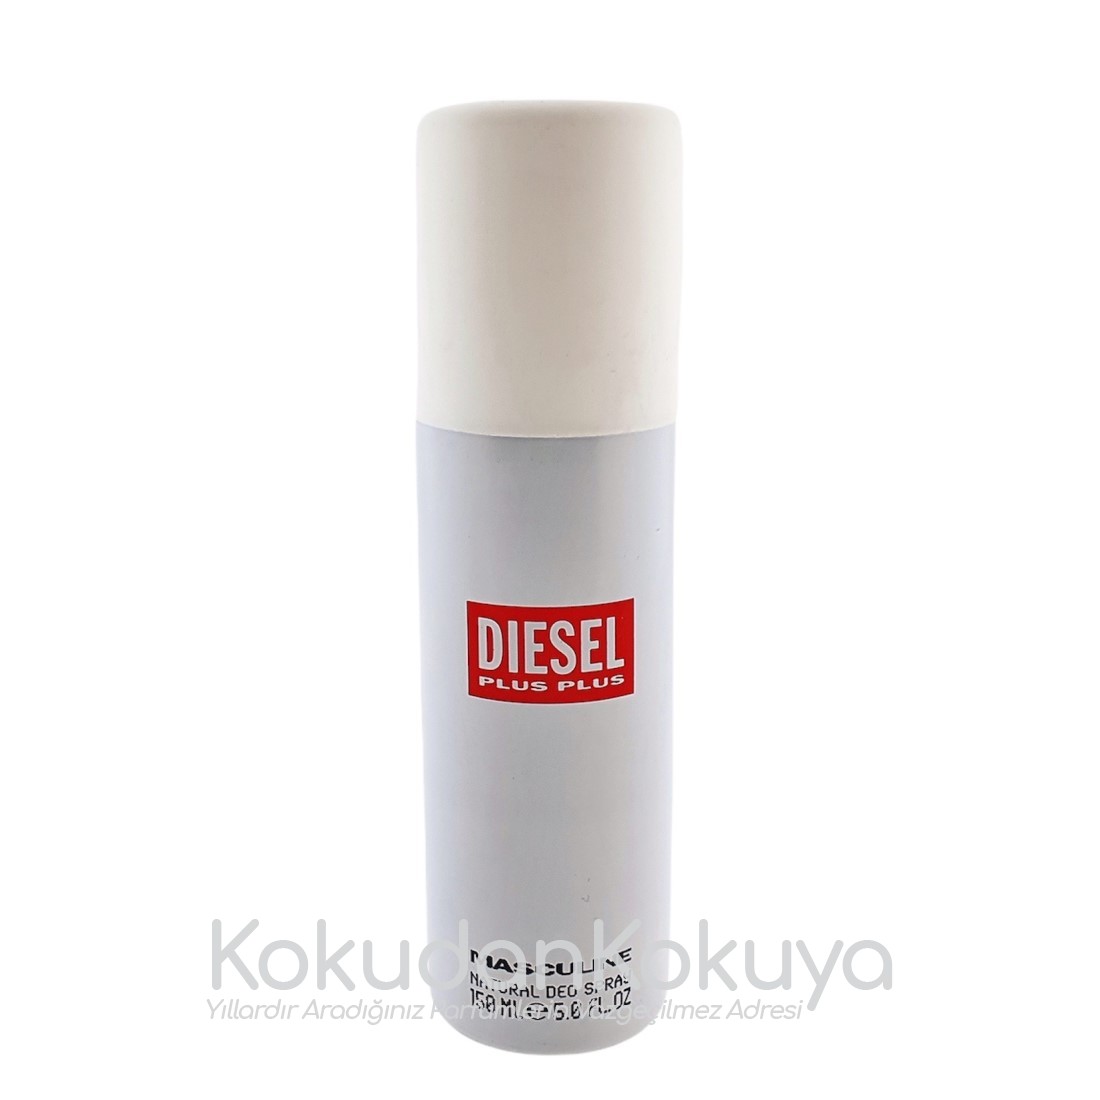 DIESEL Plus Plus Masculine (Vintage) Deodorant Erkek 150ml Deodorant Spray (Metal) 